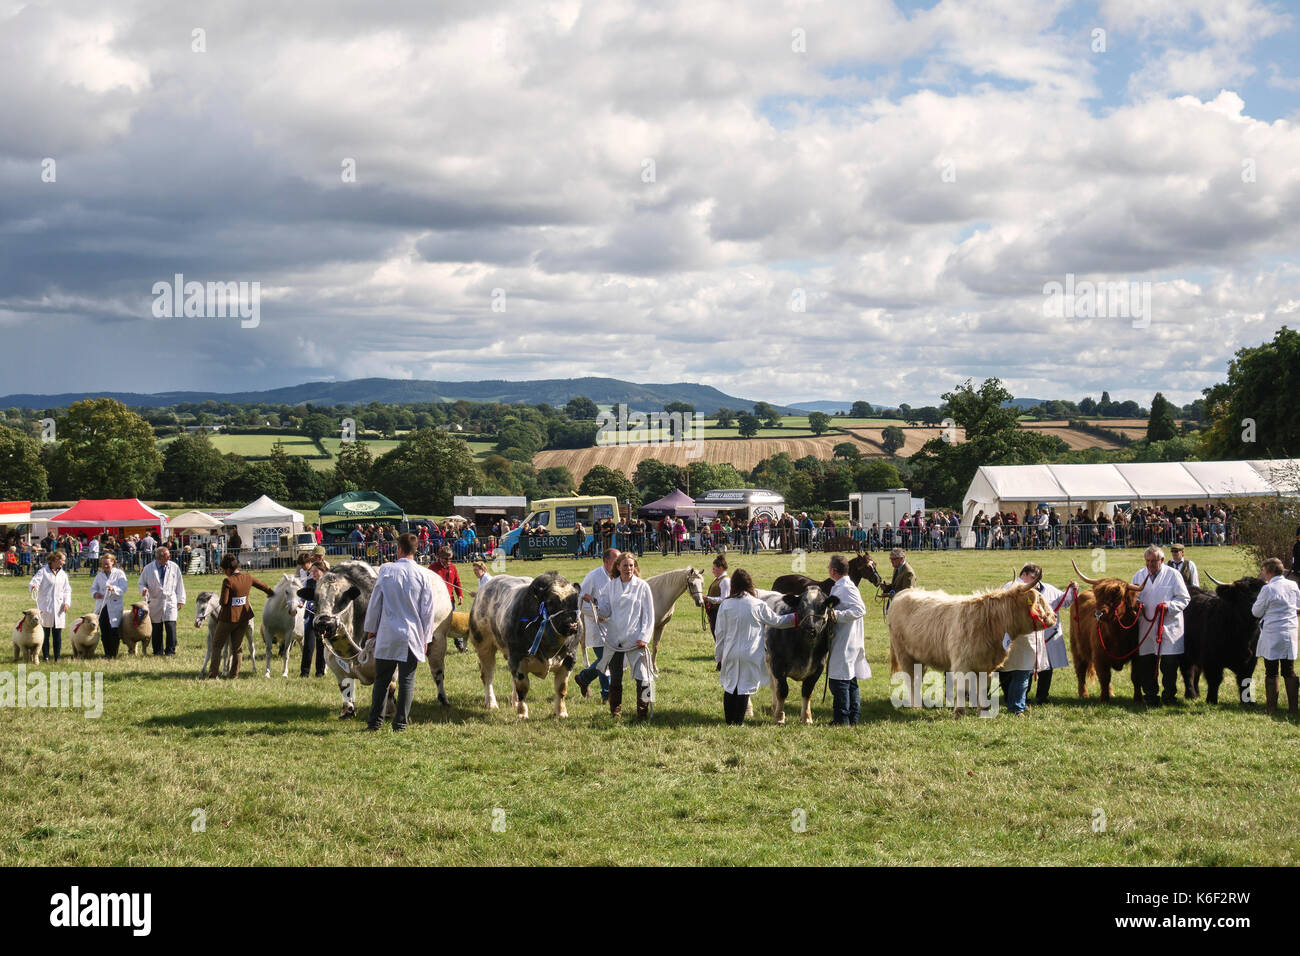 L'Kington Show (Kington Horse Show & Agricultural Society), Herefordshire, Angleterre. Un élevage traditionnel, produire et montrer de l'horticulture Banque D'Images